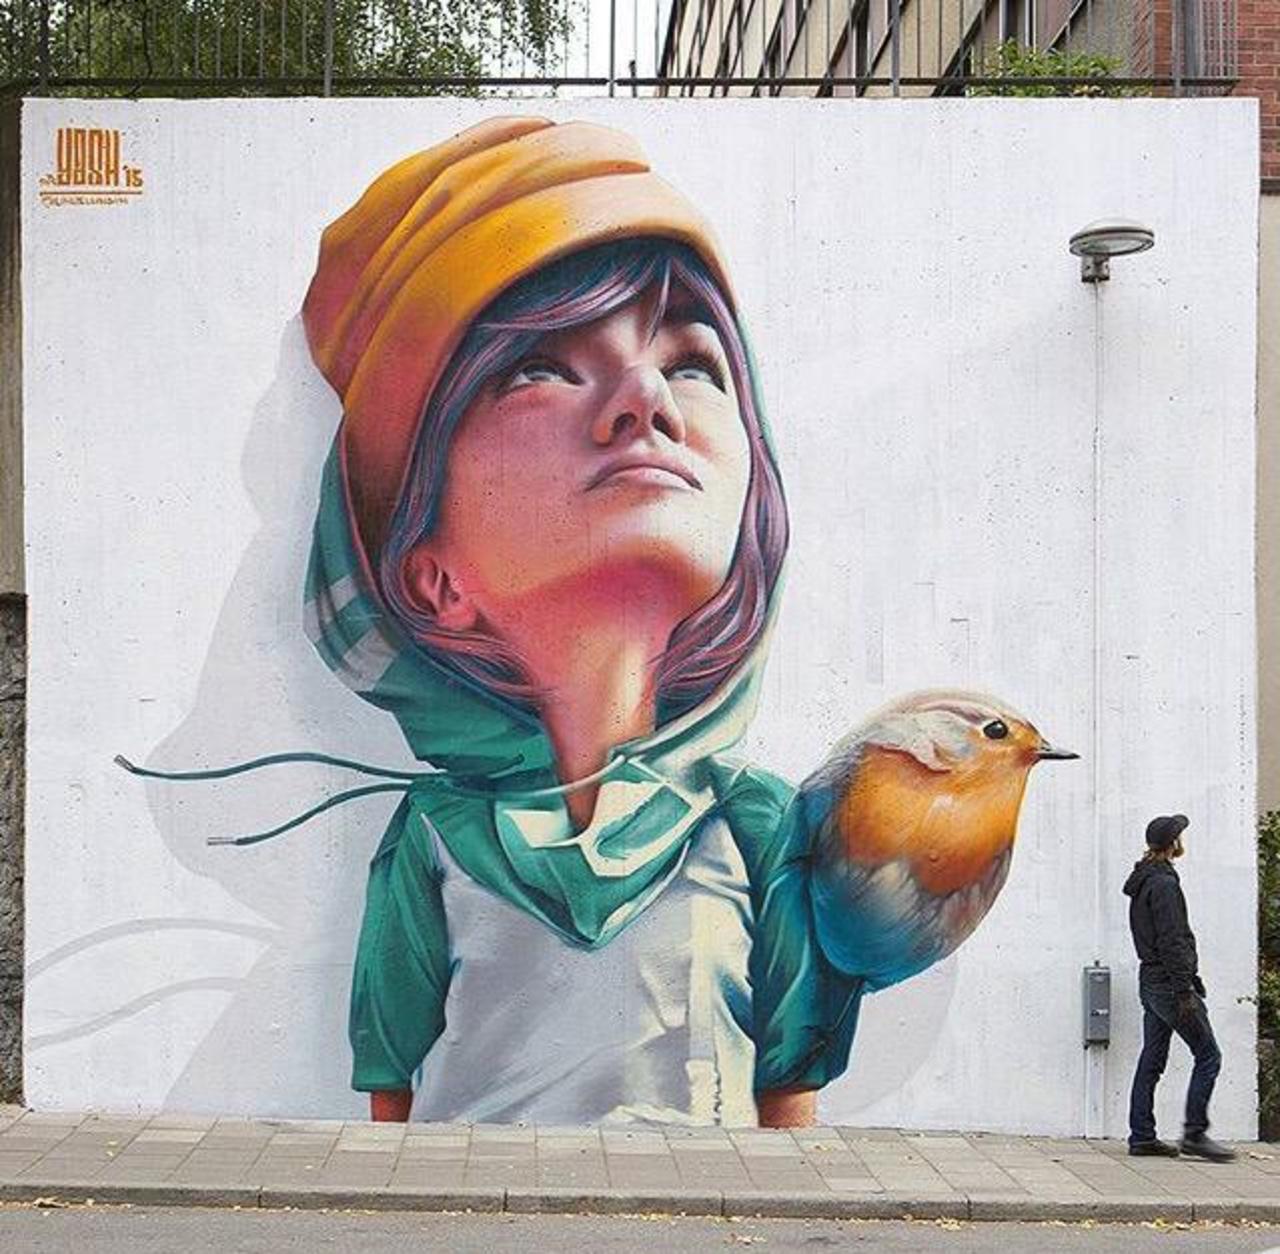 RT @GoogleStreetArt: New Street Art by Yash 

#art #graffiti #mural #streetart http://t.co/nCNVcmeNr2